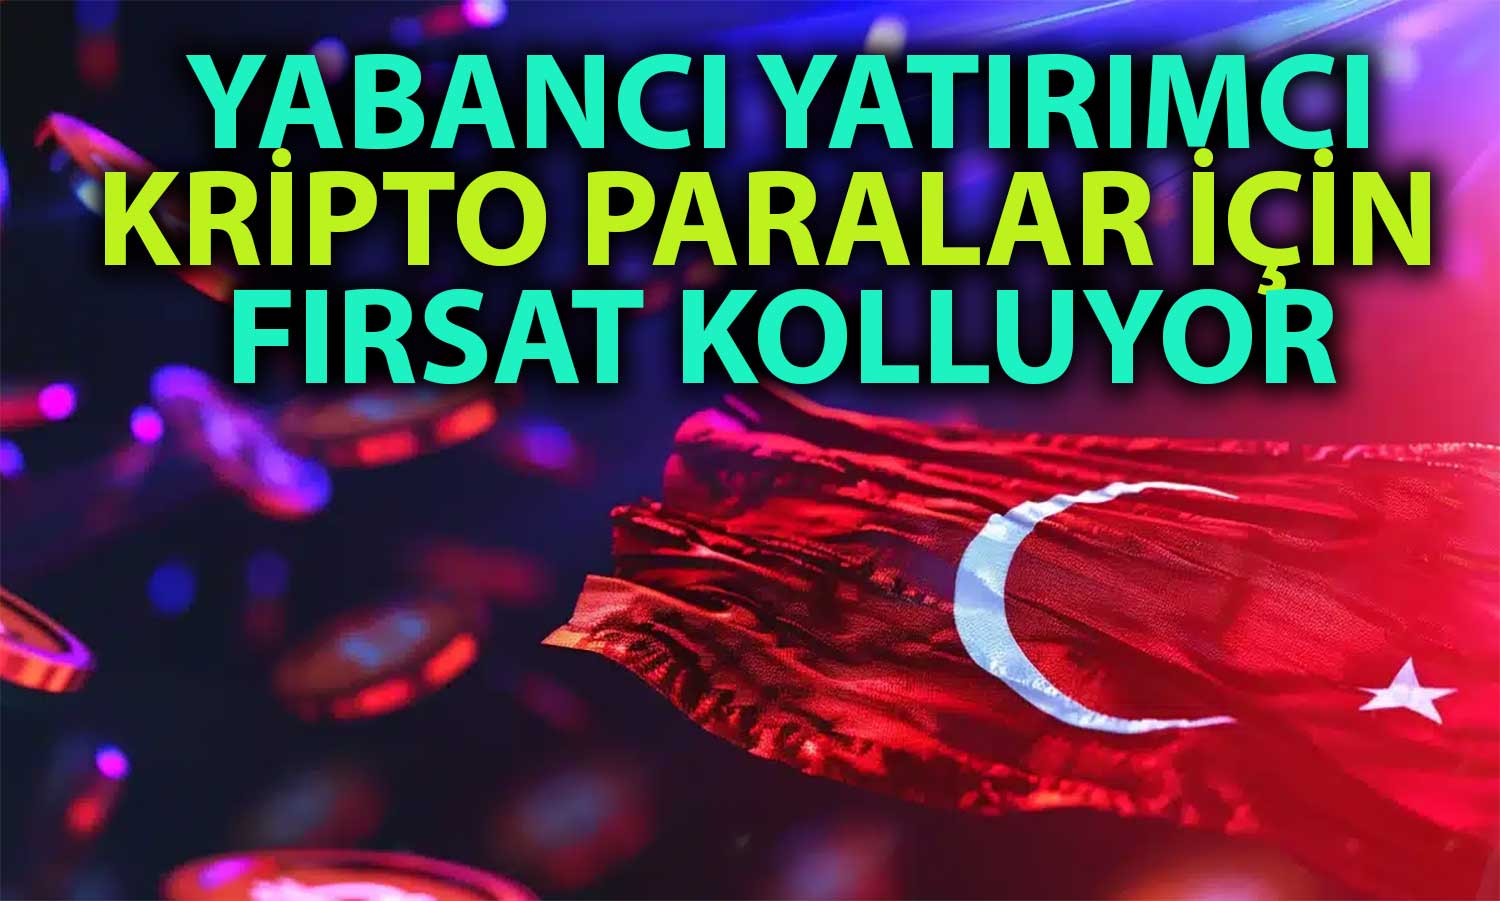 Yabancı Yatırımcı Türkiye’deki Kripto Düzenlemesini Bekliyor